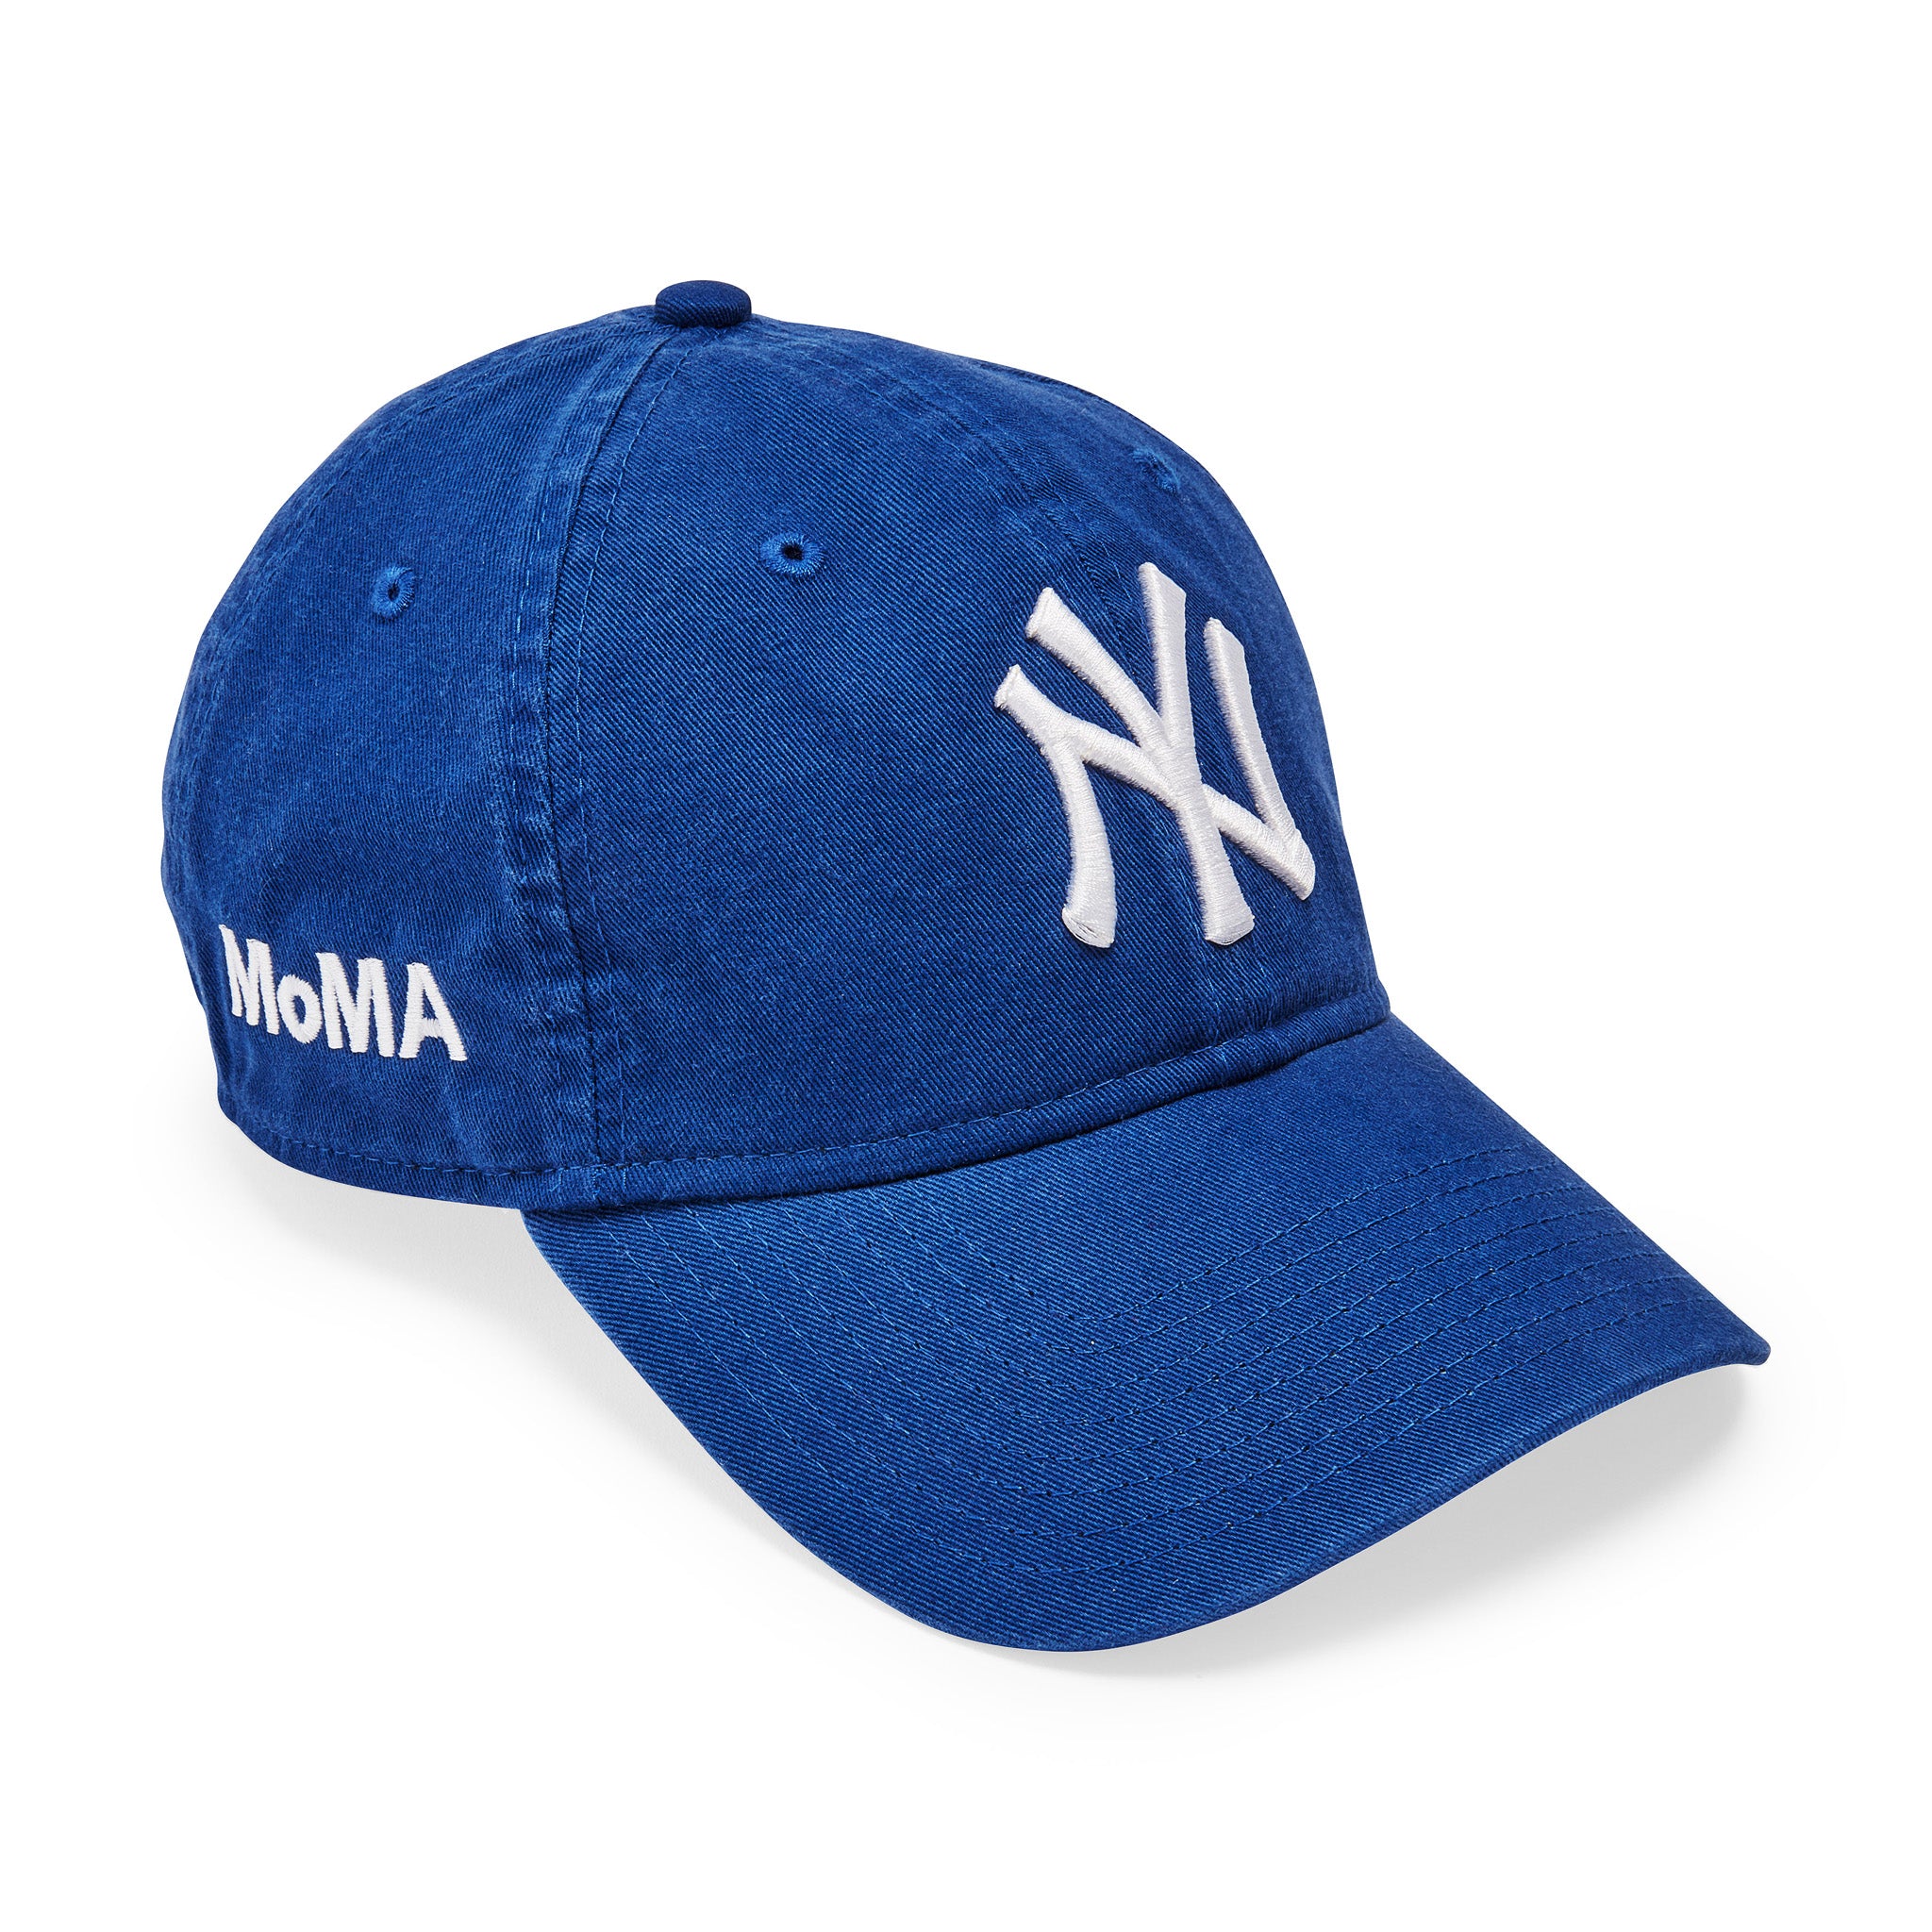 MoMA NY Yankees Adjustable Baseball Cap - Bright Royal – MoMA Design Store